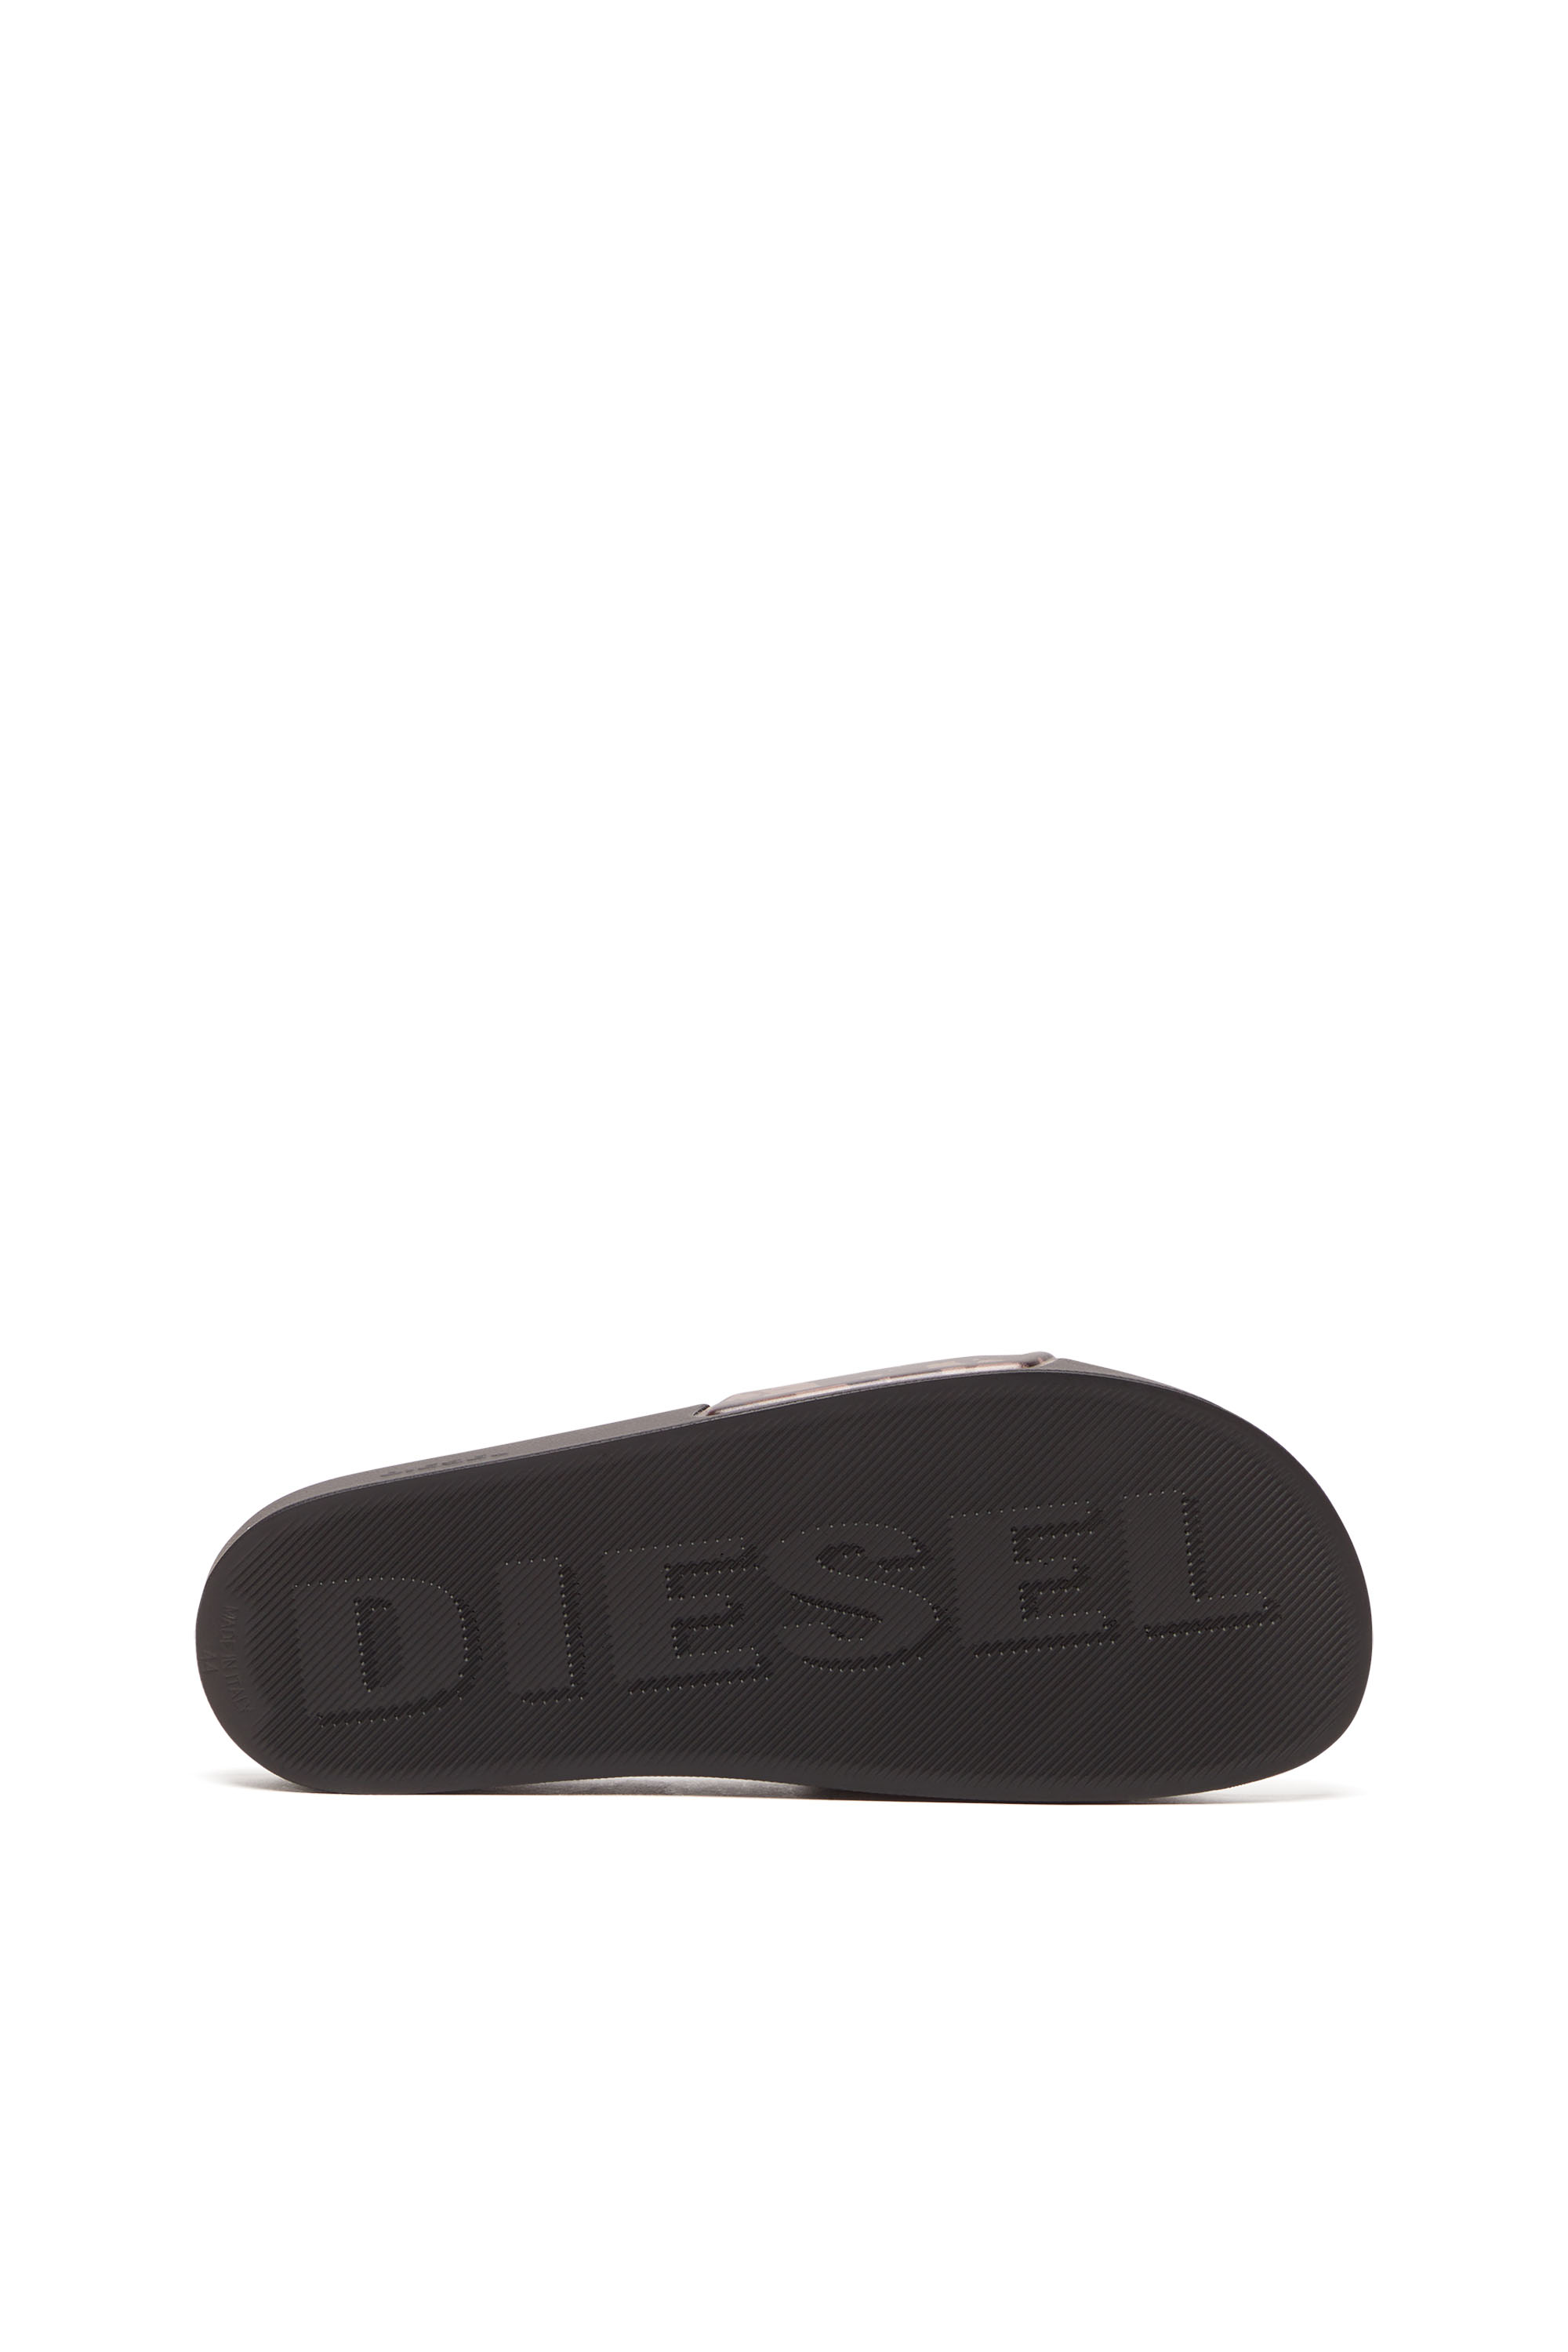 Diesel - SA-MAYEMI CC X, Noir - Image 4